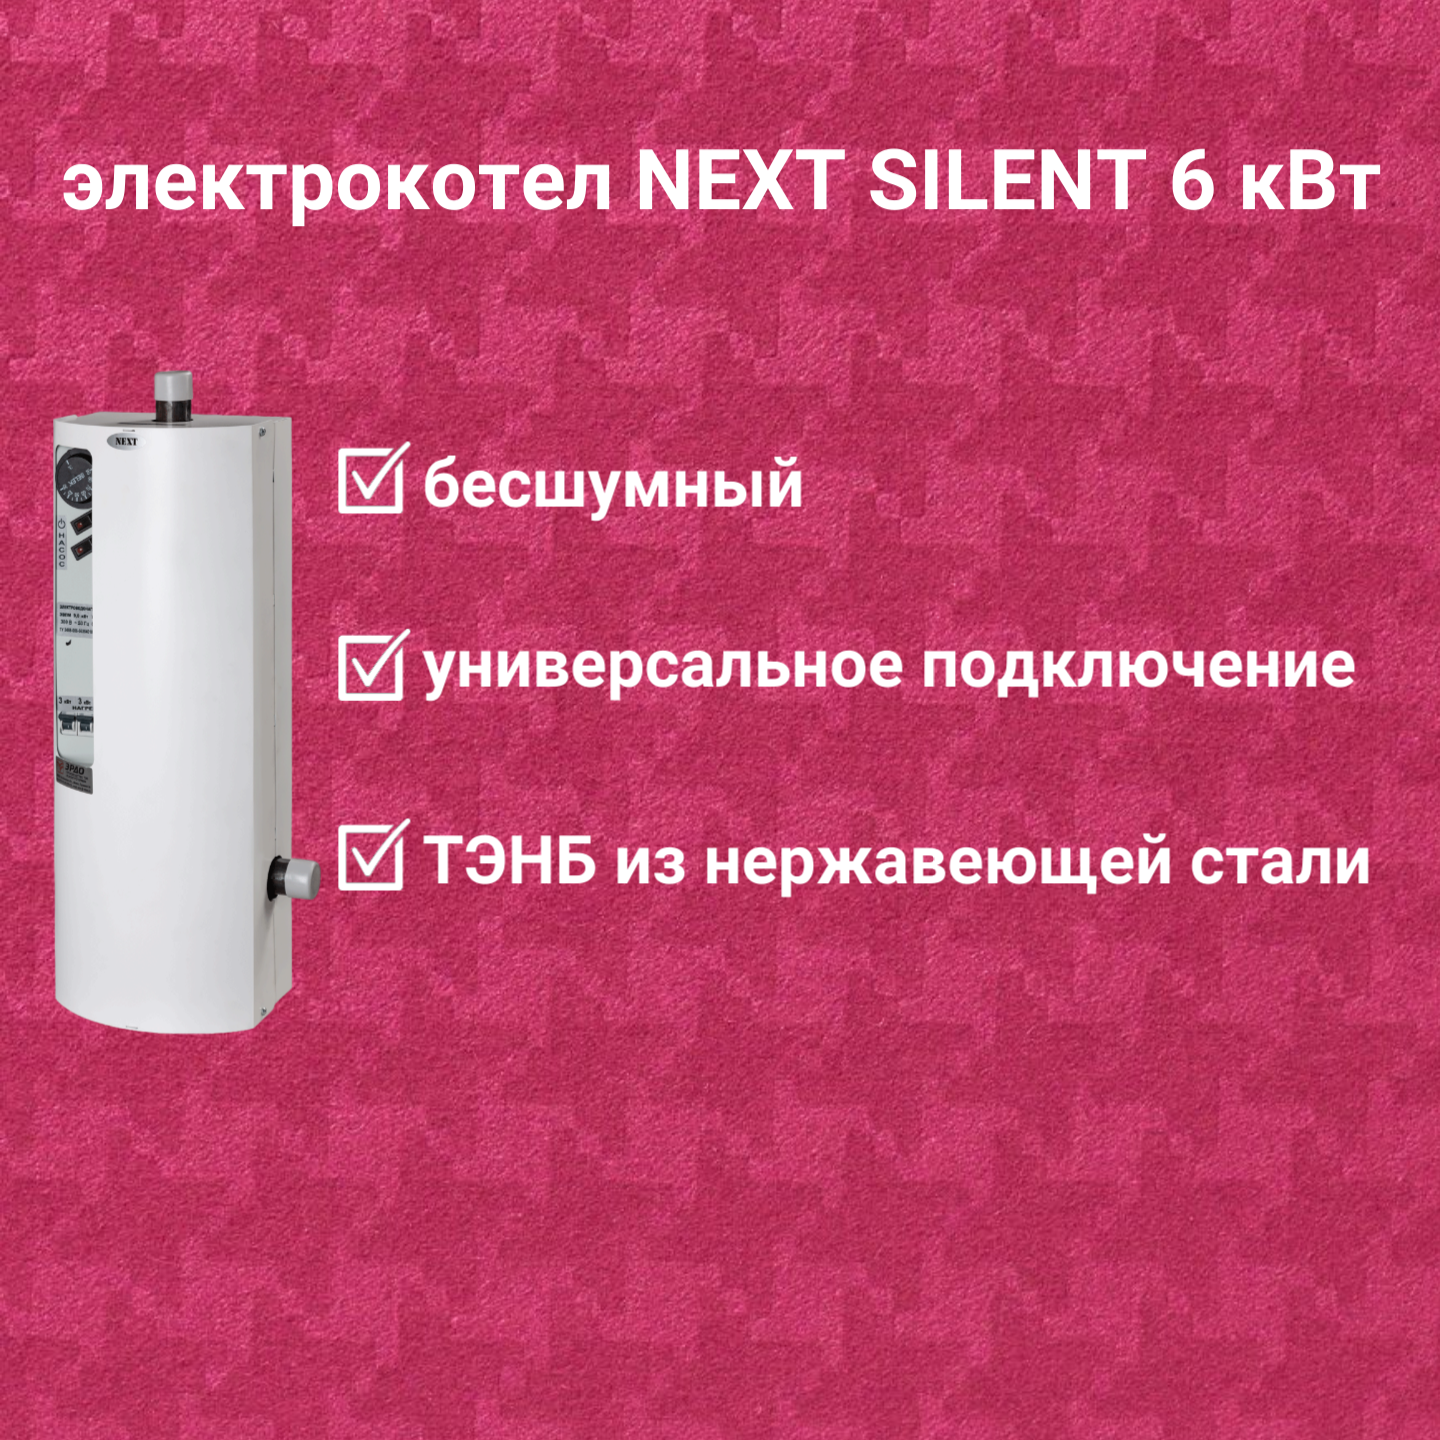 Электрокотел ЭРДО ЭВПМ-NEXT-SILENT 6 кВт с GSM модулем в комплекте купить по цене 17 250 руб.